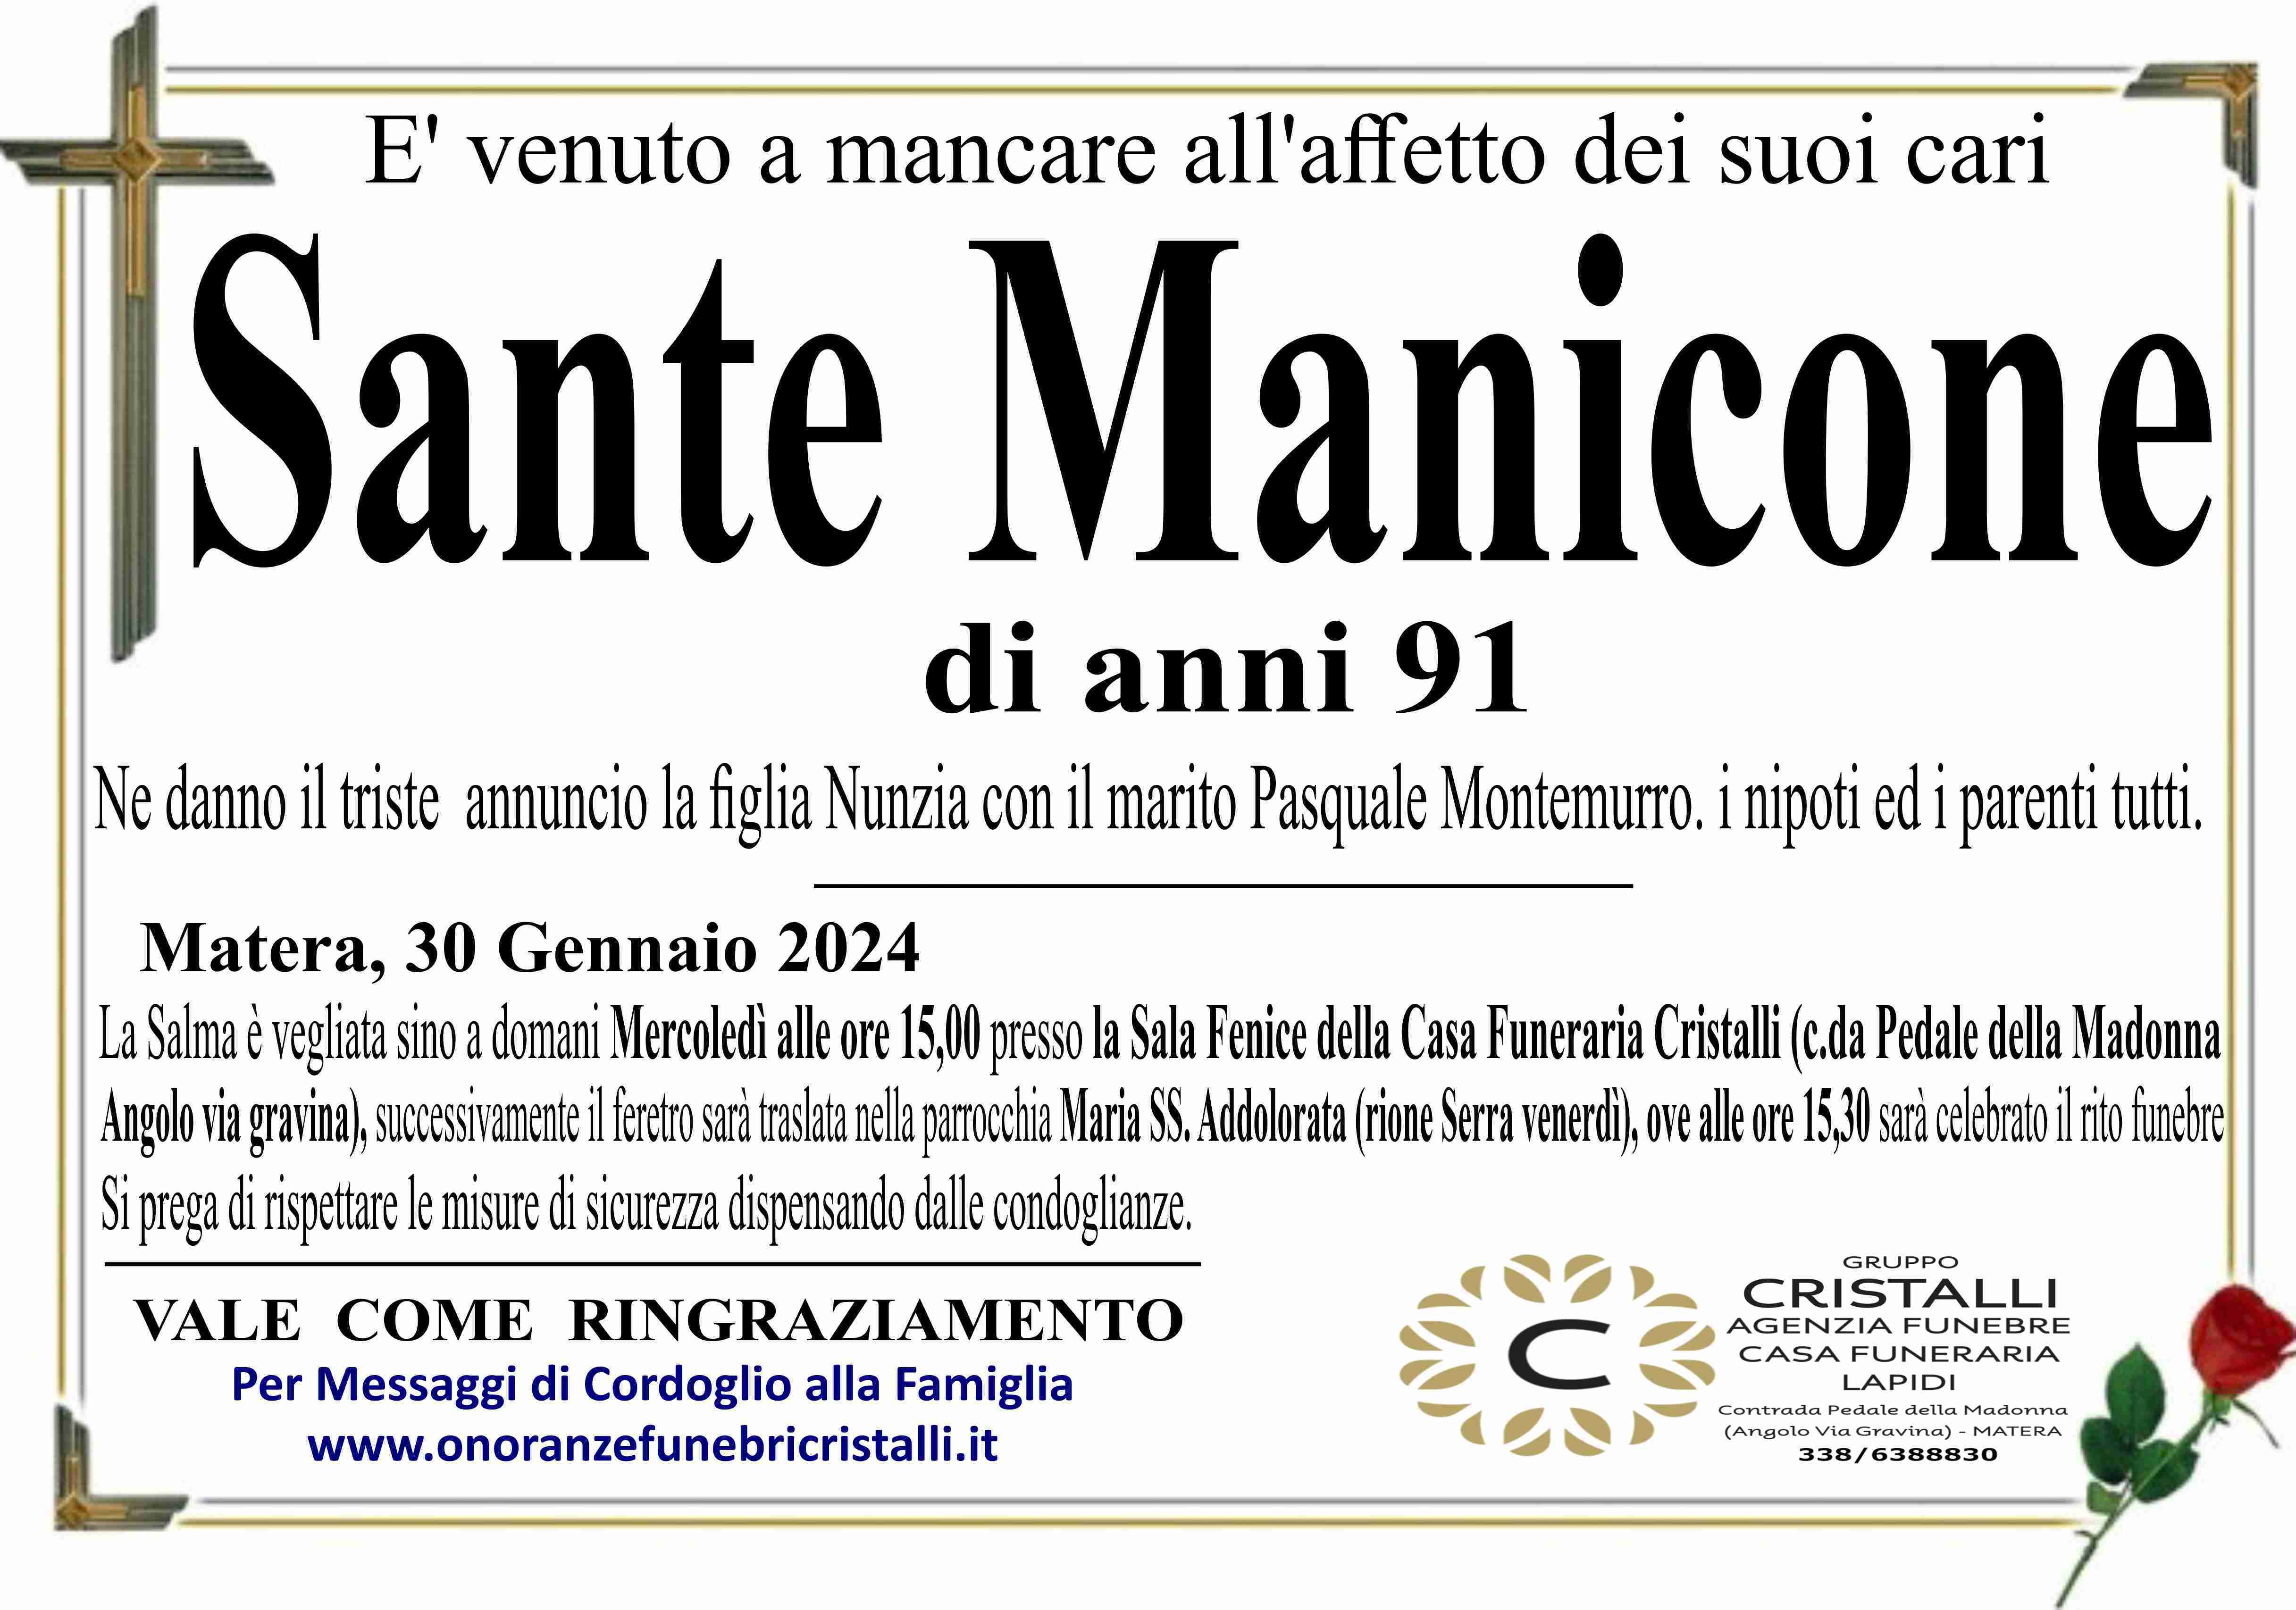 Sante Manicone